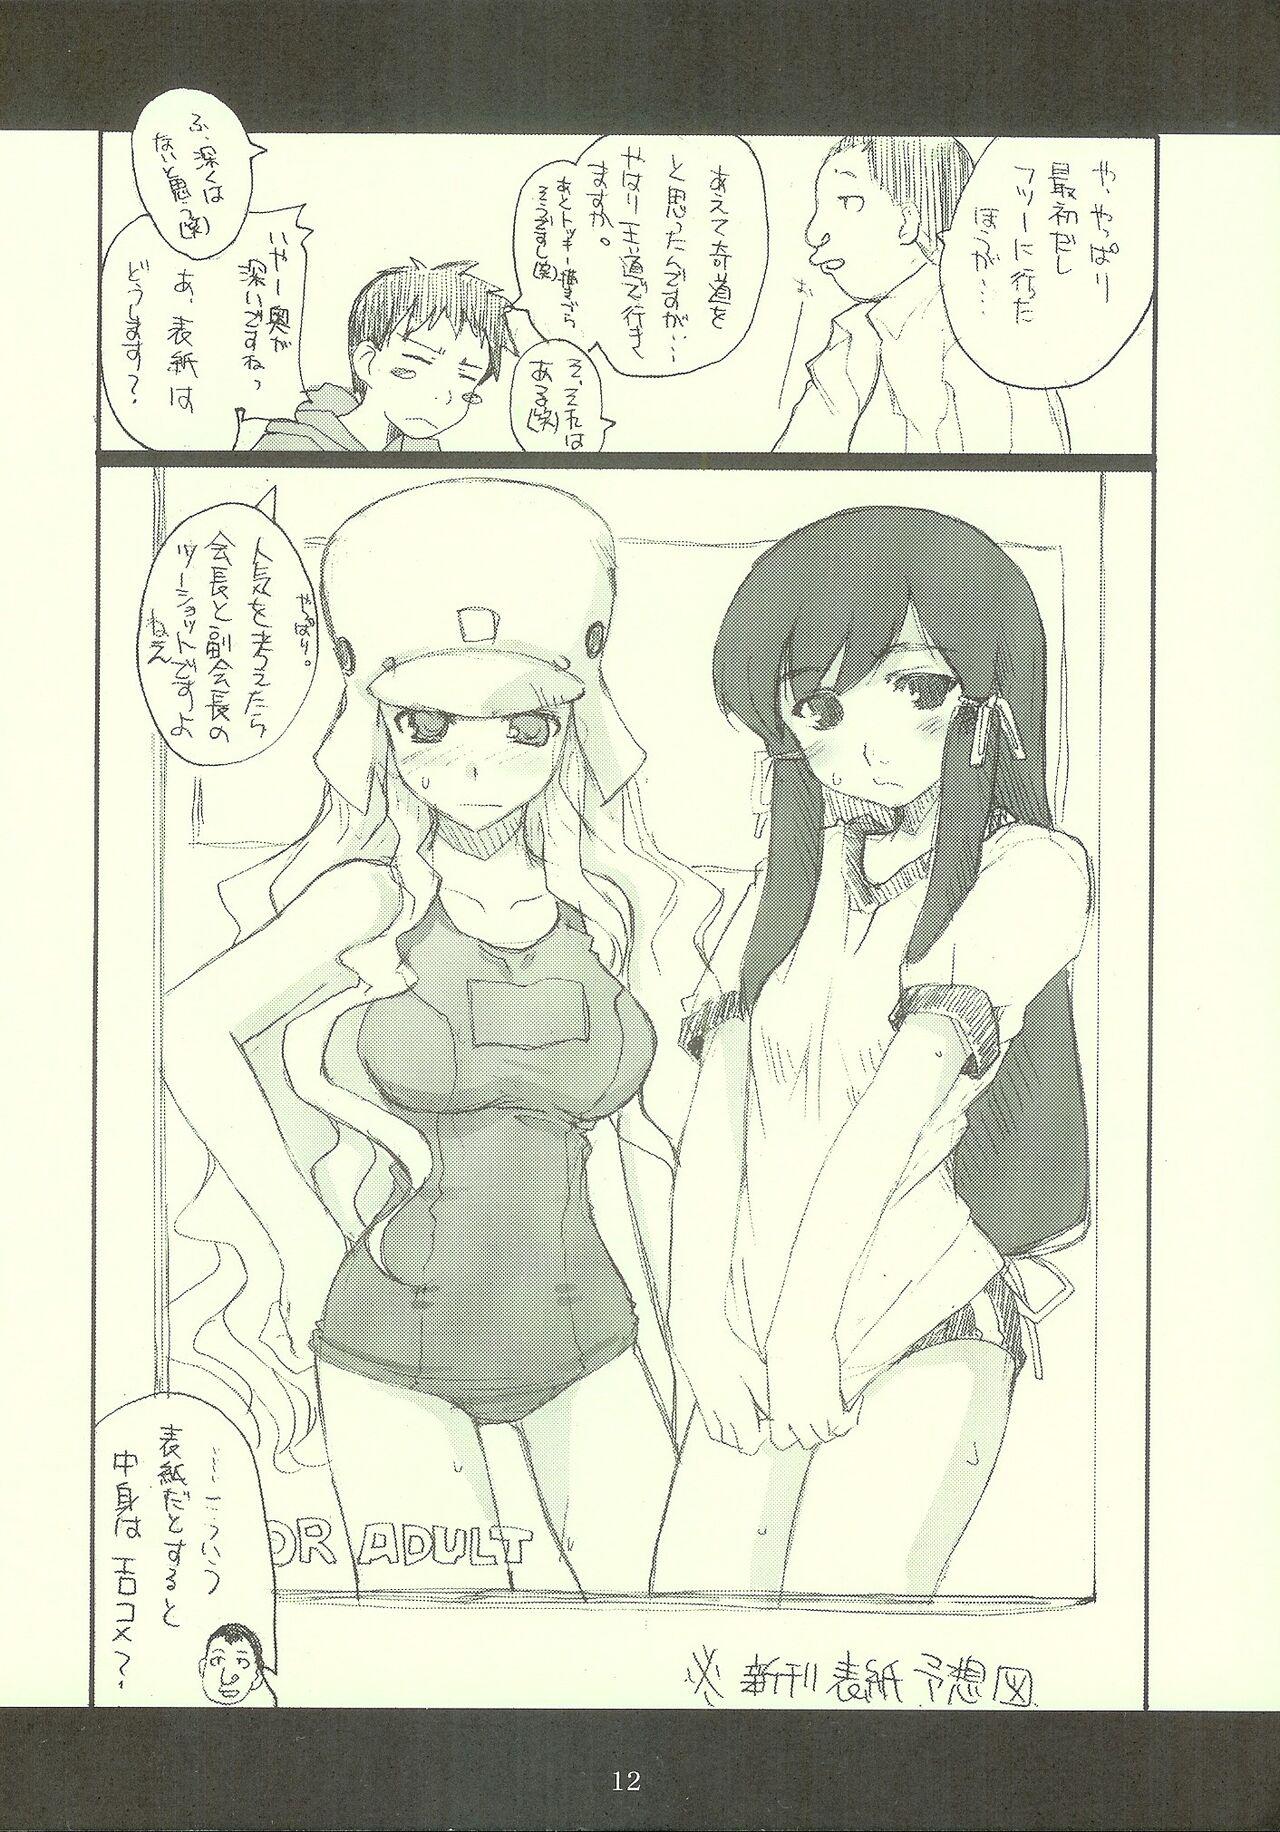 Hard Fucking ロンメル戦車隊シリーズ 「…フタキョンってなに?」号!!。 - Genshiken Kujibiki unbalance Lovers - Page 11